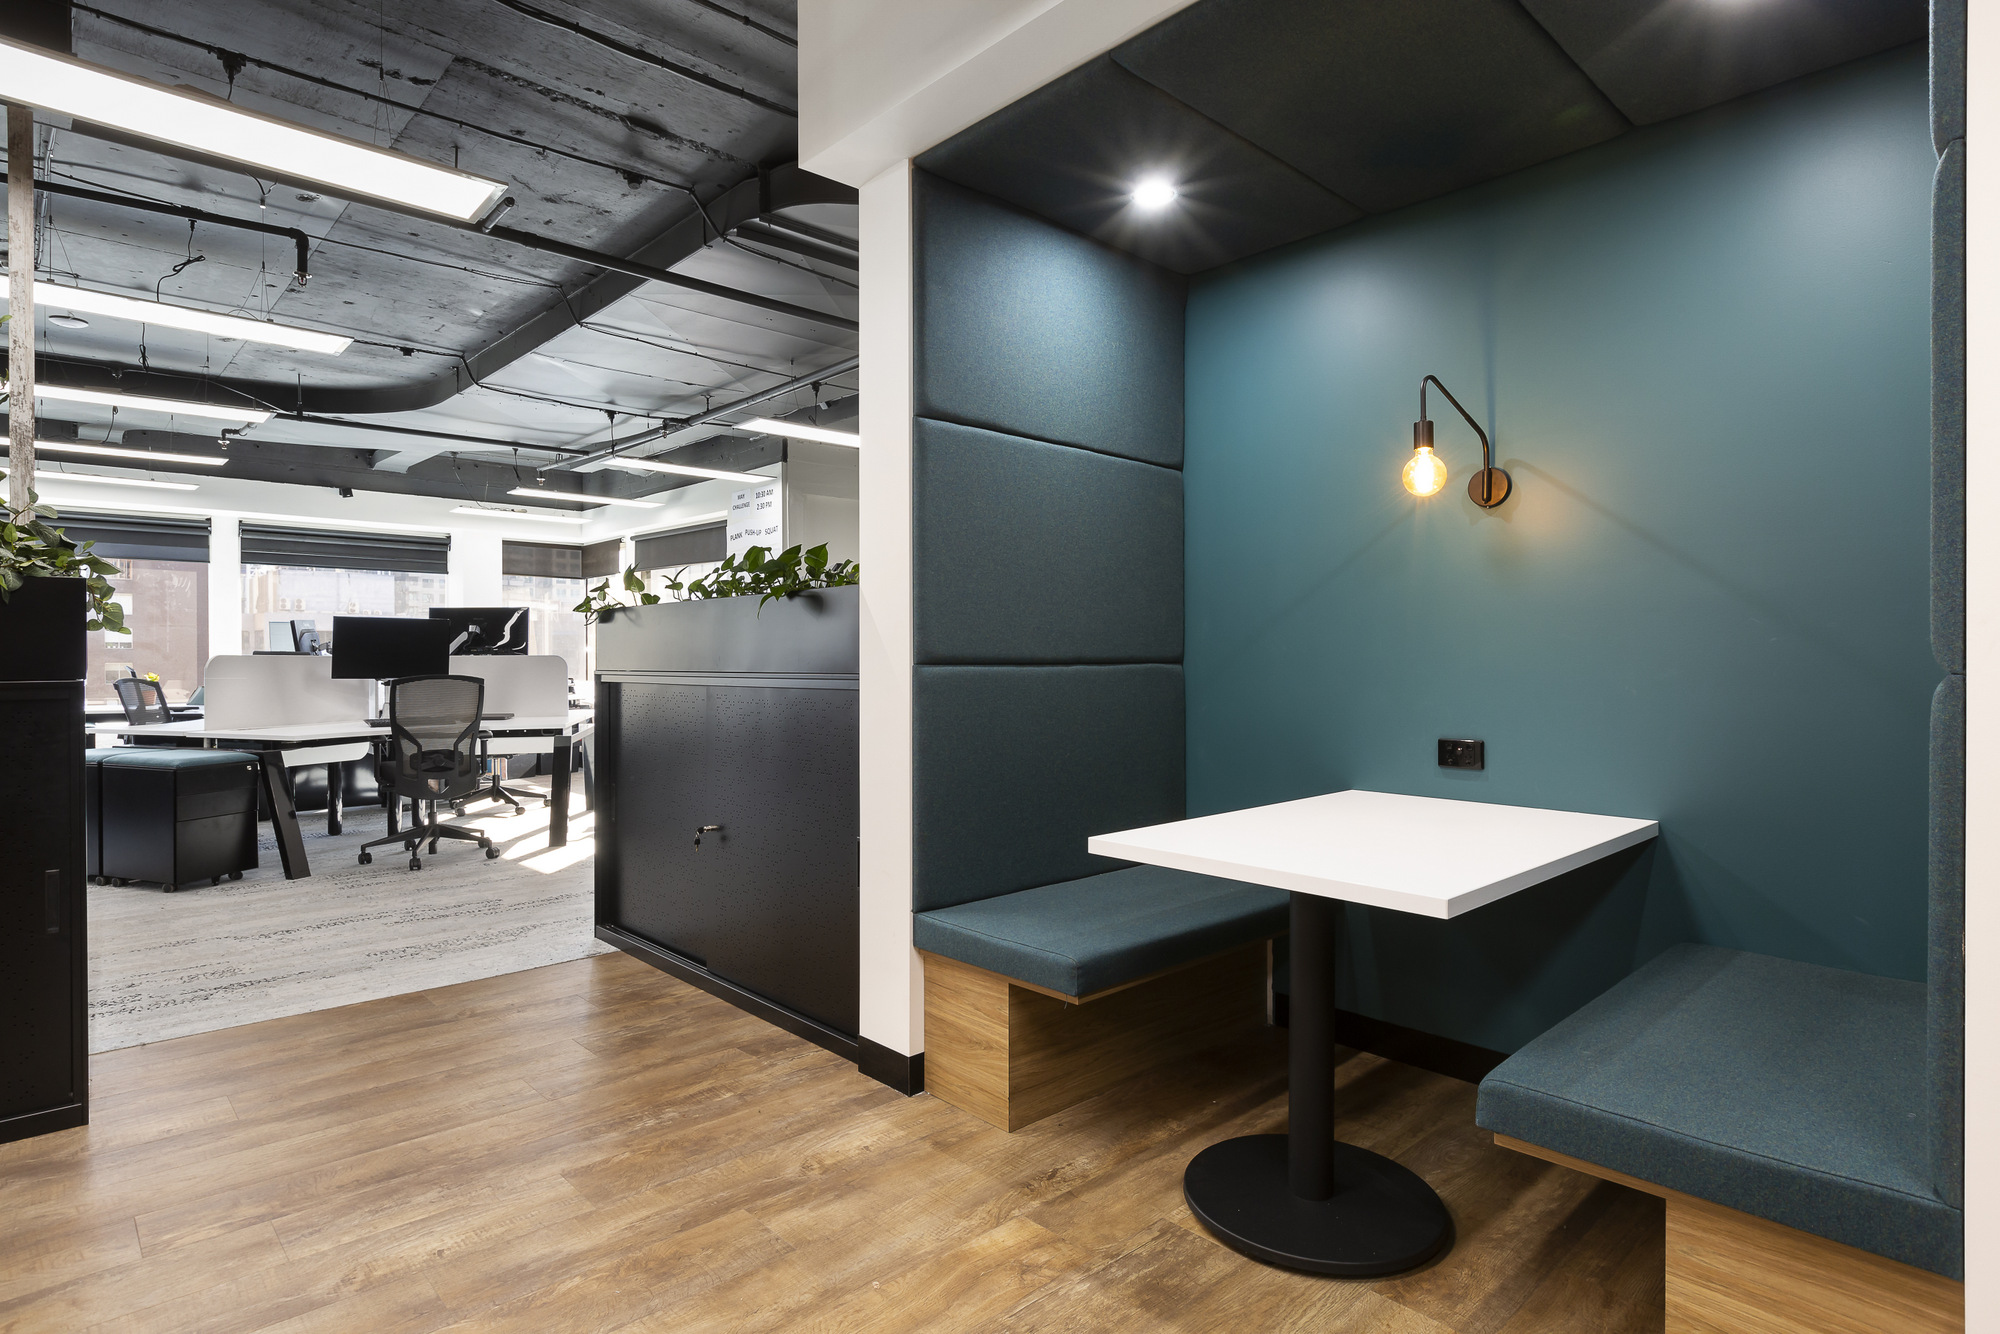 图片[2]|概念商业室内办公室——墨尔本|ART-Arrakis | 建筑室内设计的创新与灵感